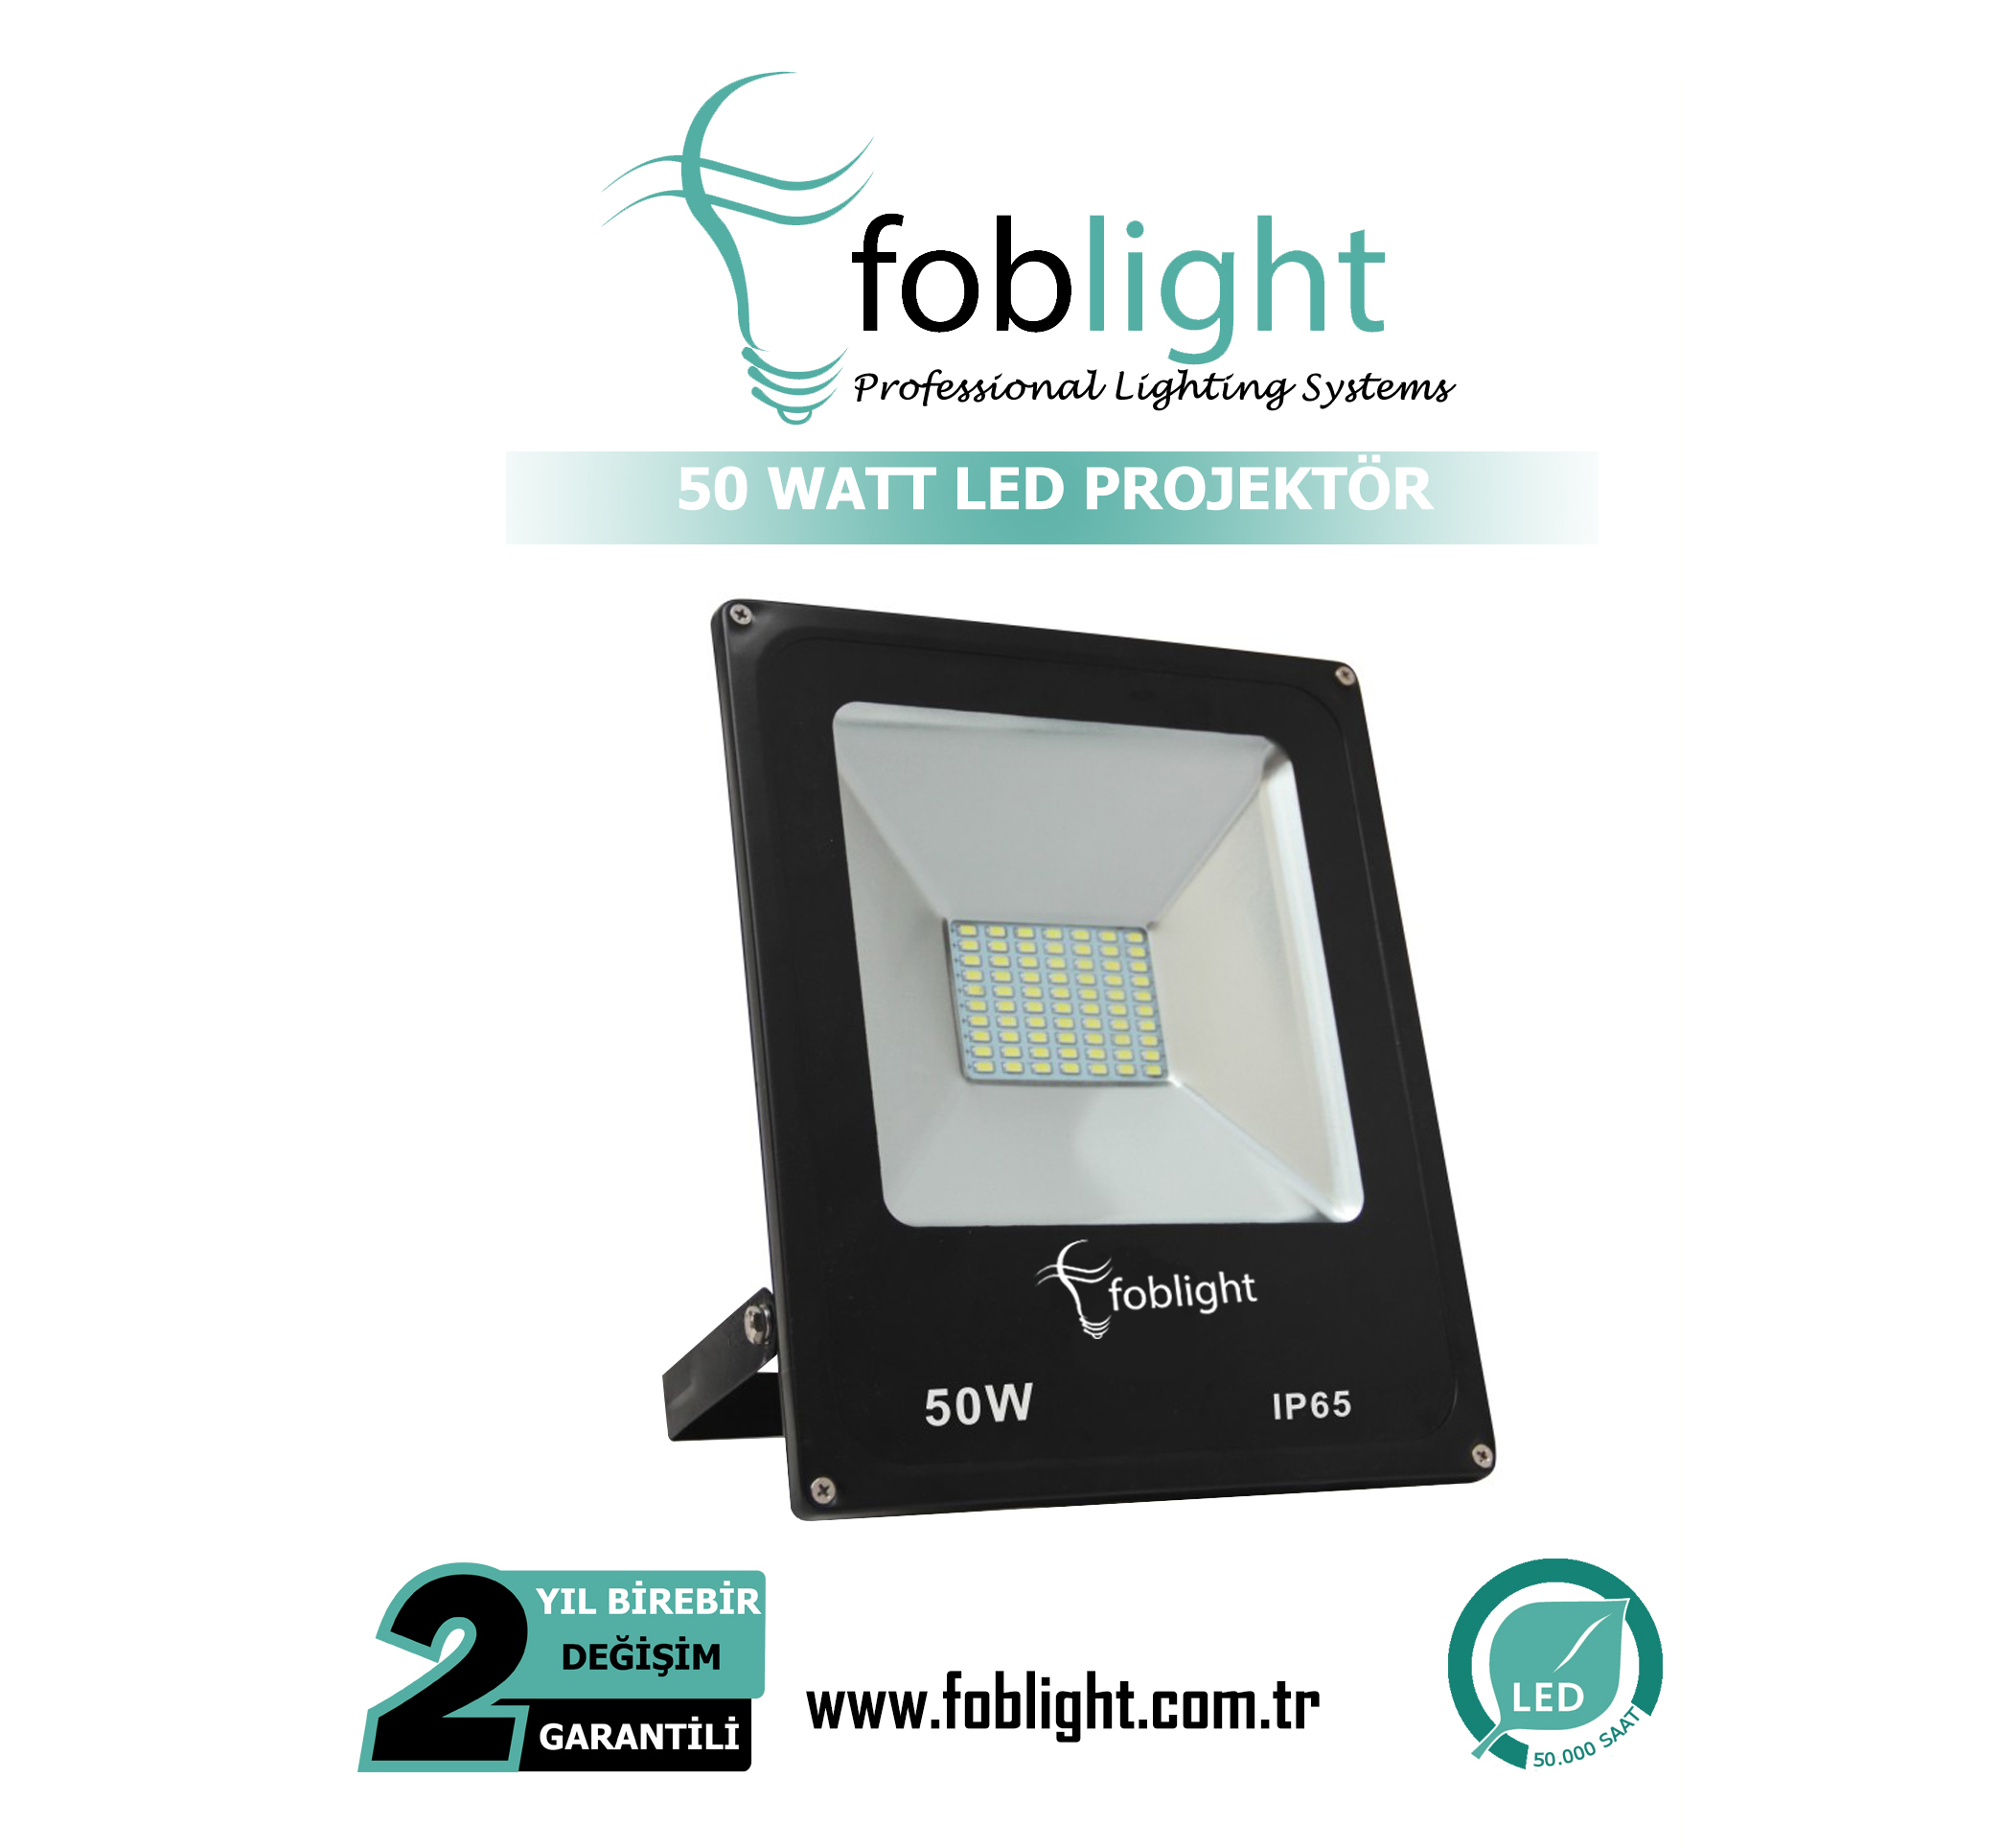 foblight 50 watt smd led projektör